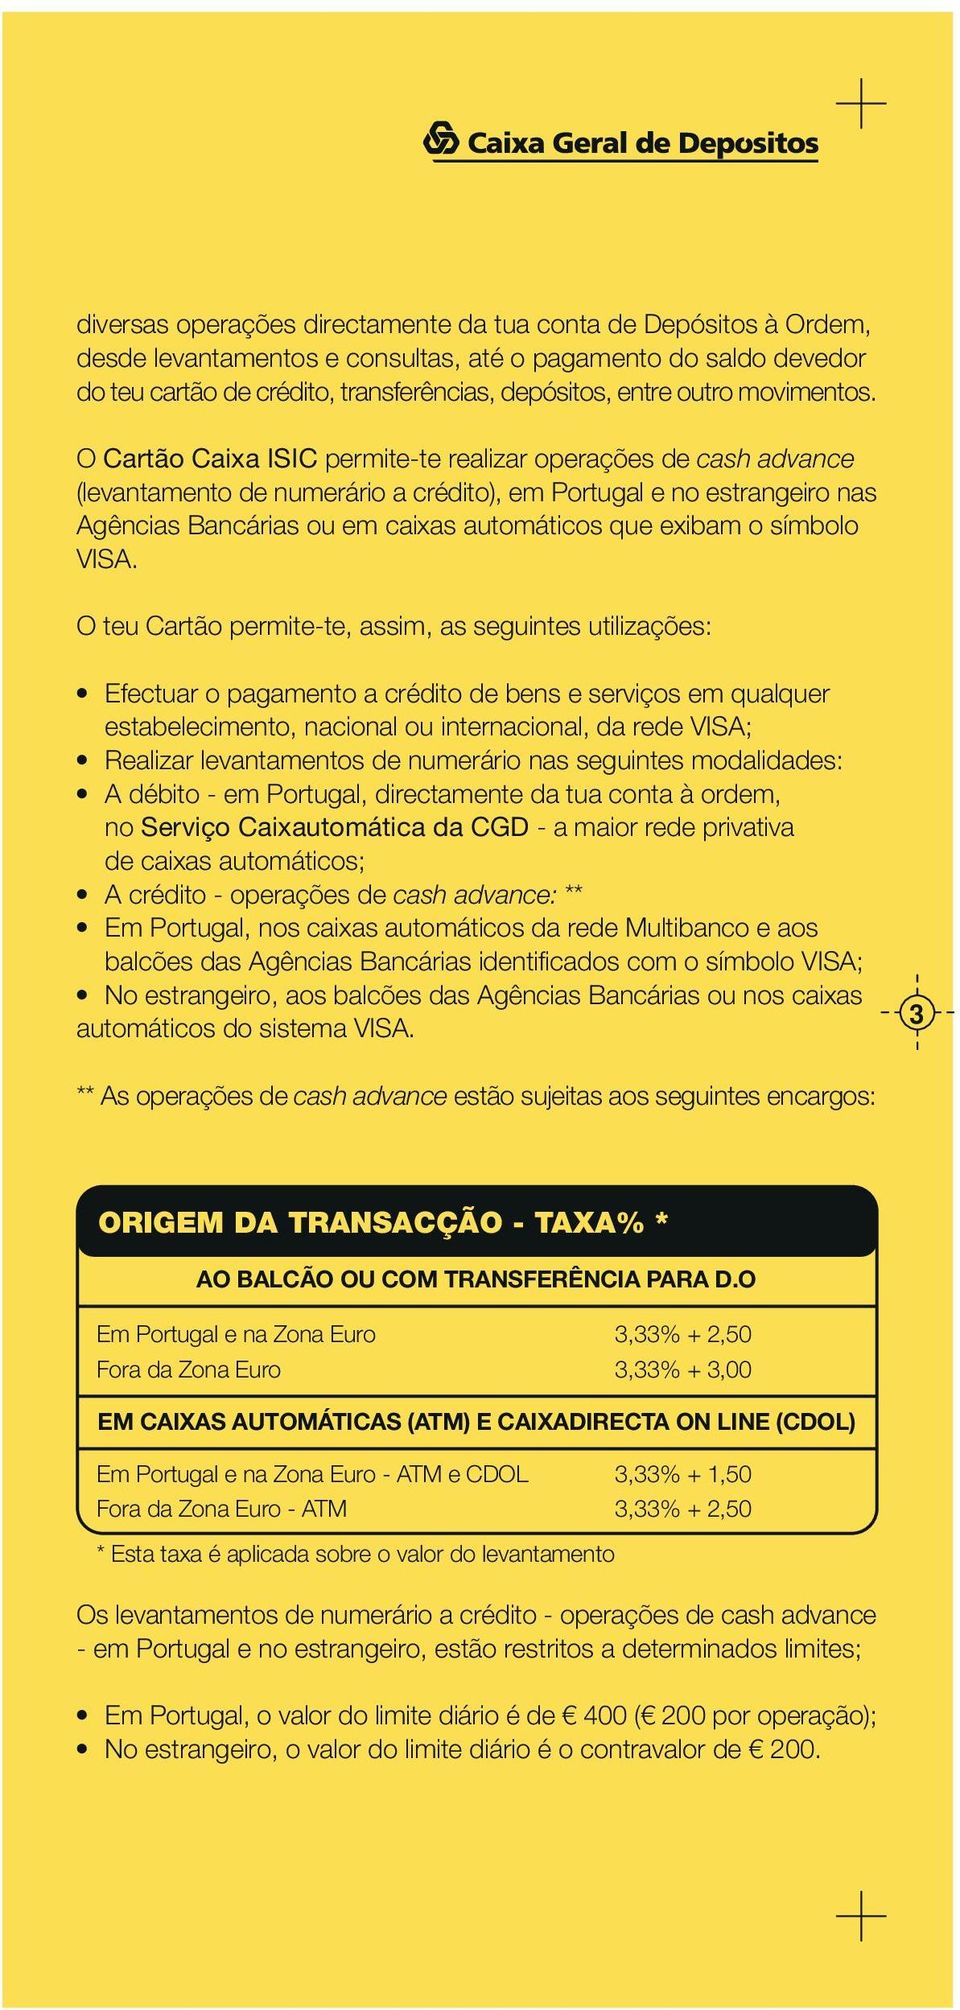 O Cartão Caixa ISIC permite-te realizar operações de cash advance (levantamento de numerário a crédito), em Portugal e no estrangeiro nas Agências Bancárias ou em caixas automáticos que exibam o